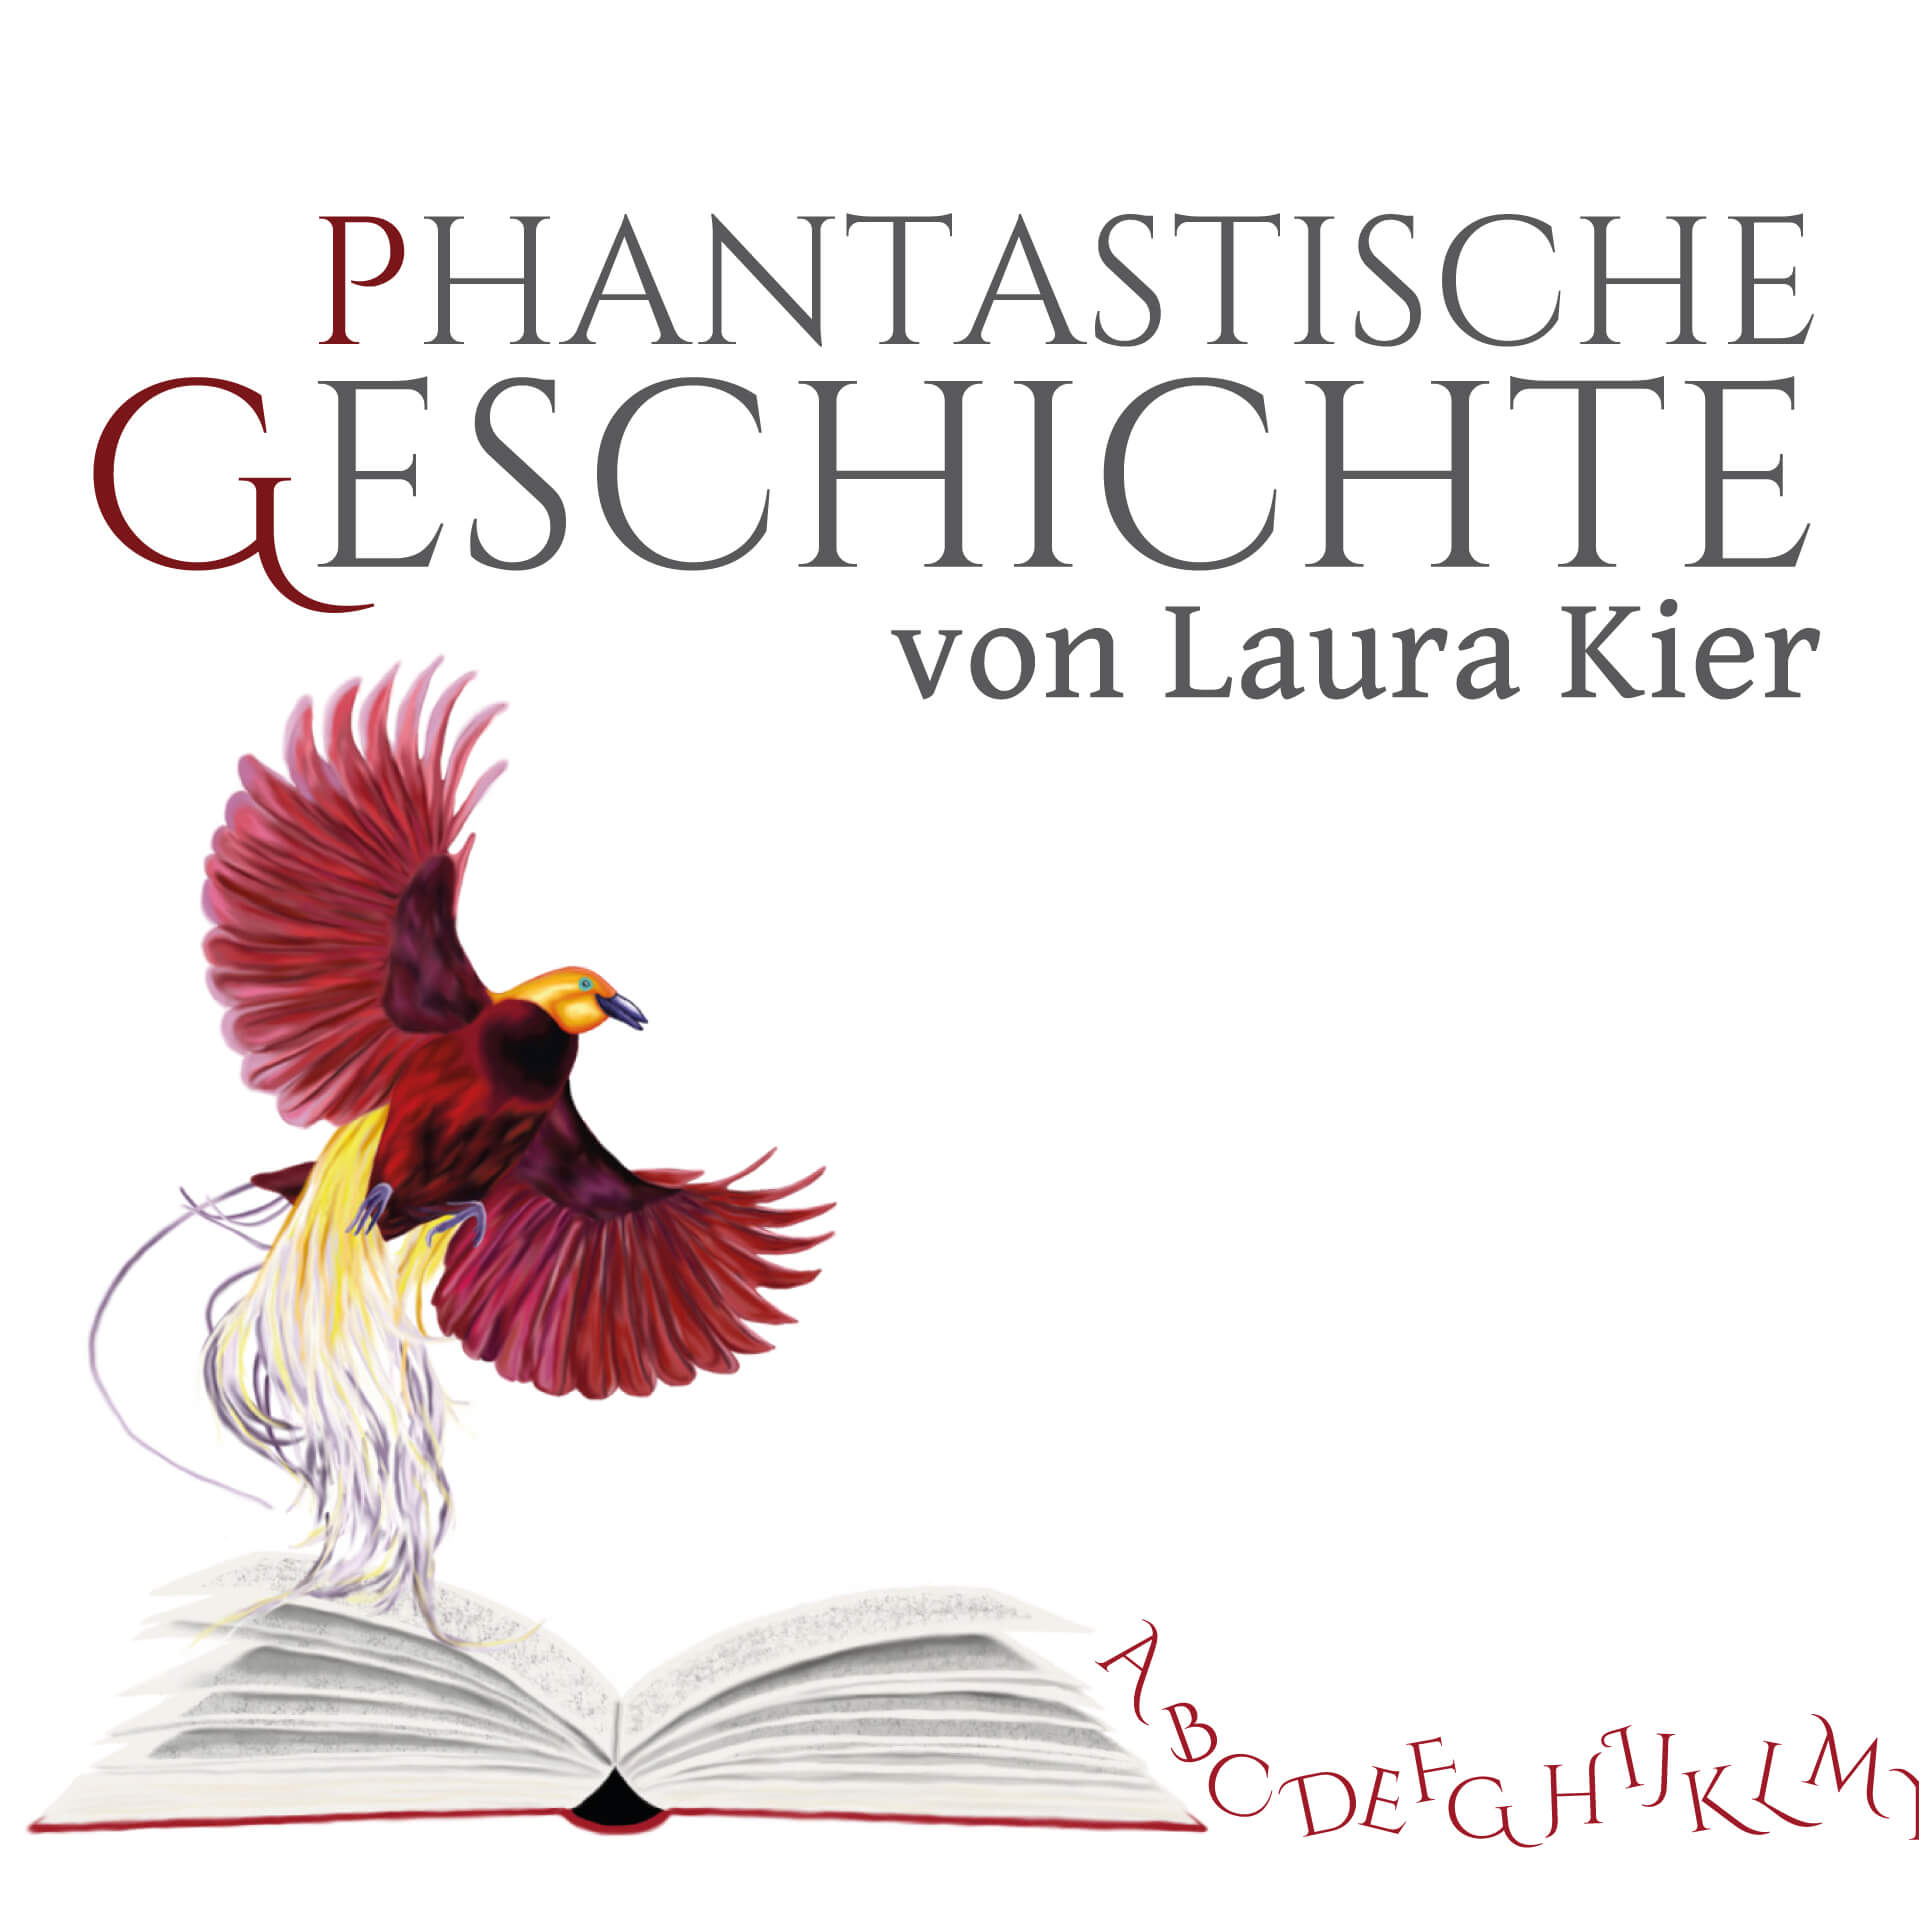 phantastische Geschichte von Laura Kier - Titel mit dem Logo der Autorin: ein Phönix, der aus einem Buch aufsteigt; aus dem Buch fließen Buchstaben